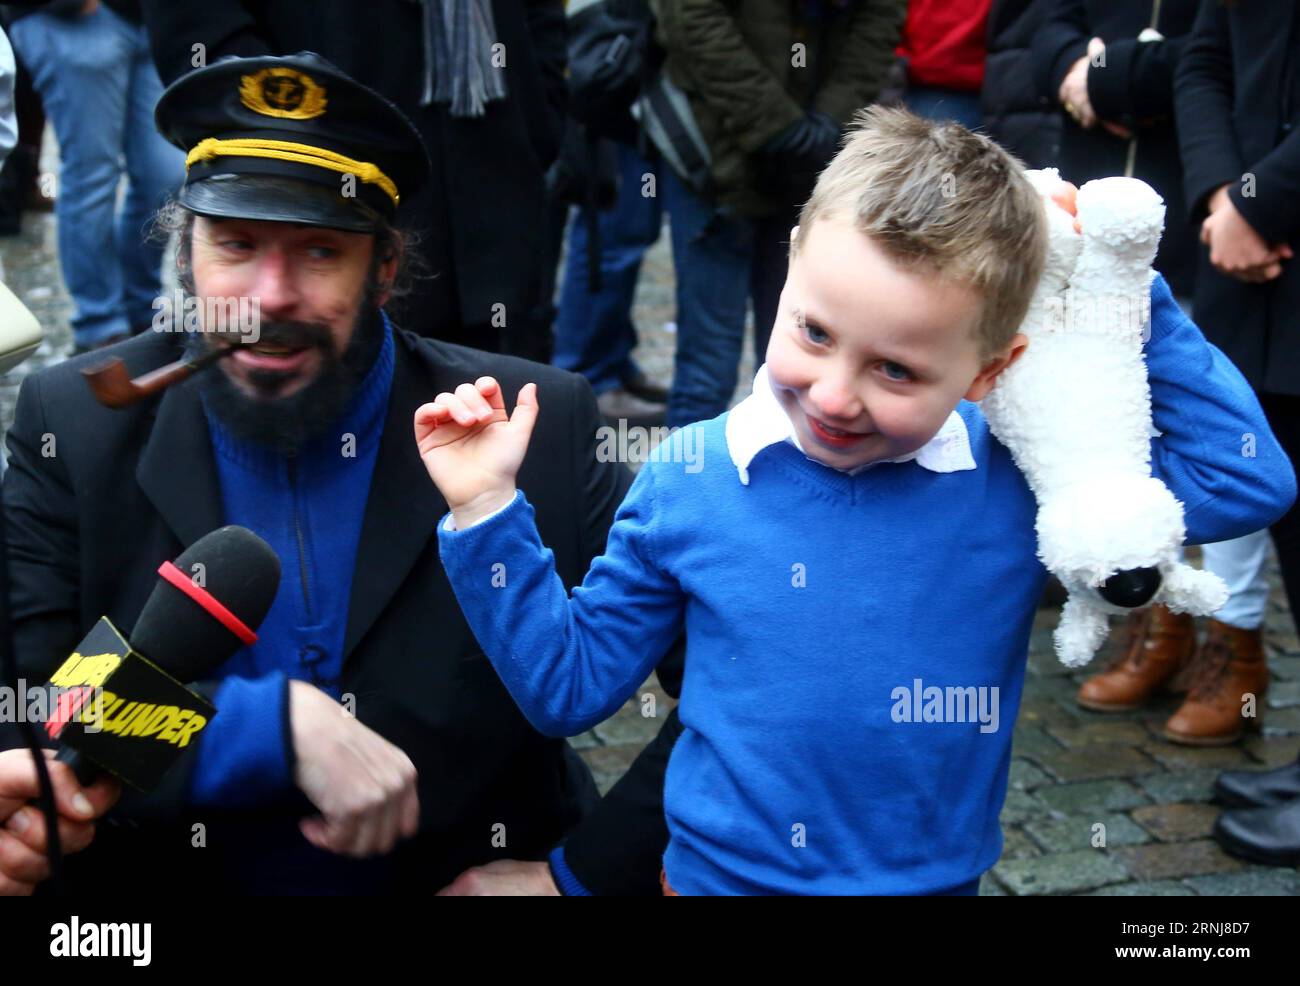 (170108) -- BRUXELLES, le 8 janvier 2017 -- Un jeune fan des aventures de Tintin vient au spectacle sur la Grand-place de Bruxelles, Belgique, le 7 janvier 2017. Un spectacle de personnages comiques des aventures de Tintin a eu lieu samedi à Bruxelles. Les comics aventures de Tintin racontent les histoires d'un jeune reporter et explorateur belge. Ils ont été traduits dans des dizaines de langues et adaptés à la radio, à la télévision, au théâtre et au cinéma. (Zxj) BELGIQUE-BRUXELLES- LES AVENTURES DE TINTIN -SHOW GongxBing PUBLICATIONxNOTxINxCHN Bruxelles Jan 8 2017 un jeune supporter des aventures de Tintin VIENT à la SH Banque D'Images